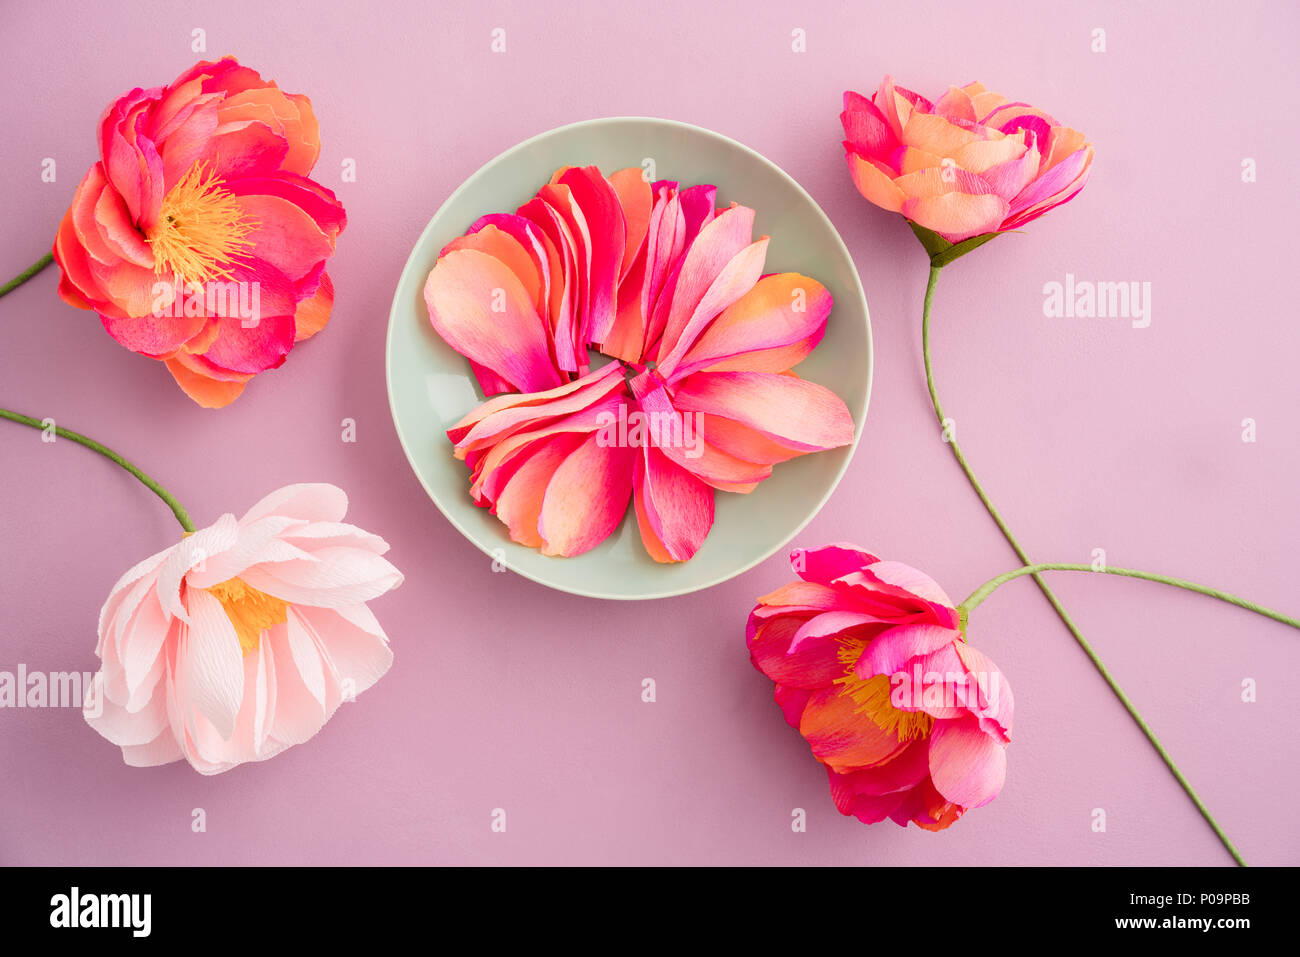 Fatte a mano e tinti a mano carta crespa peonia fiori con carta crespa petali di fiori in soluzione satura di colore arancione e rosa colori di giallo su sfondo rosa Foto Stock